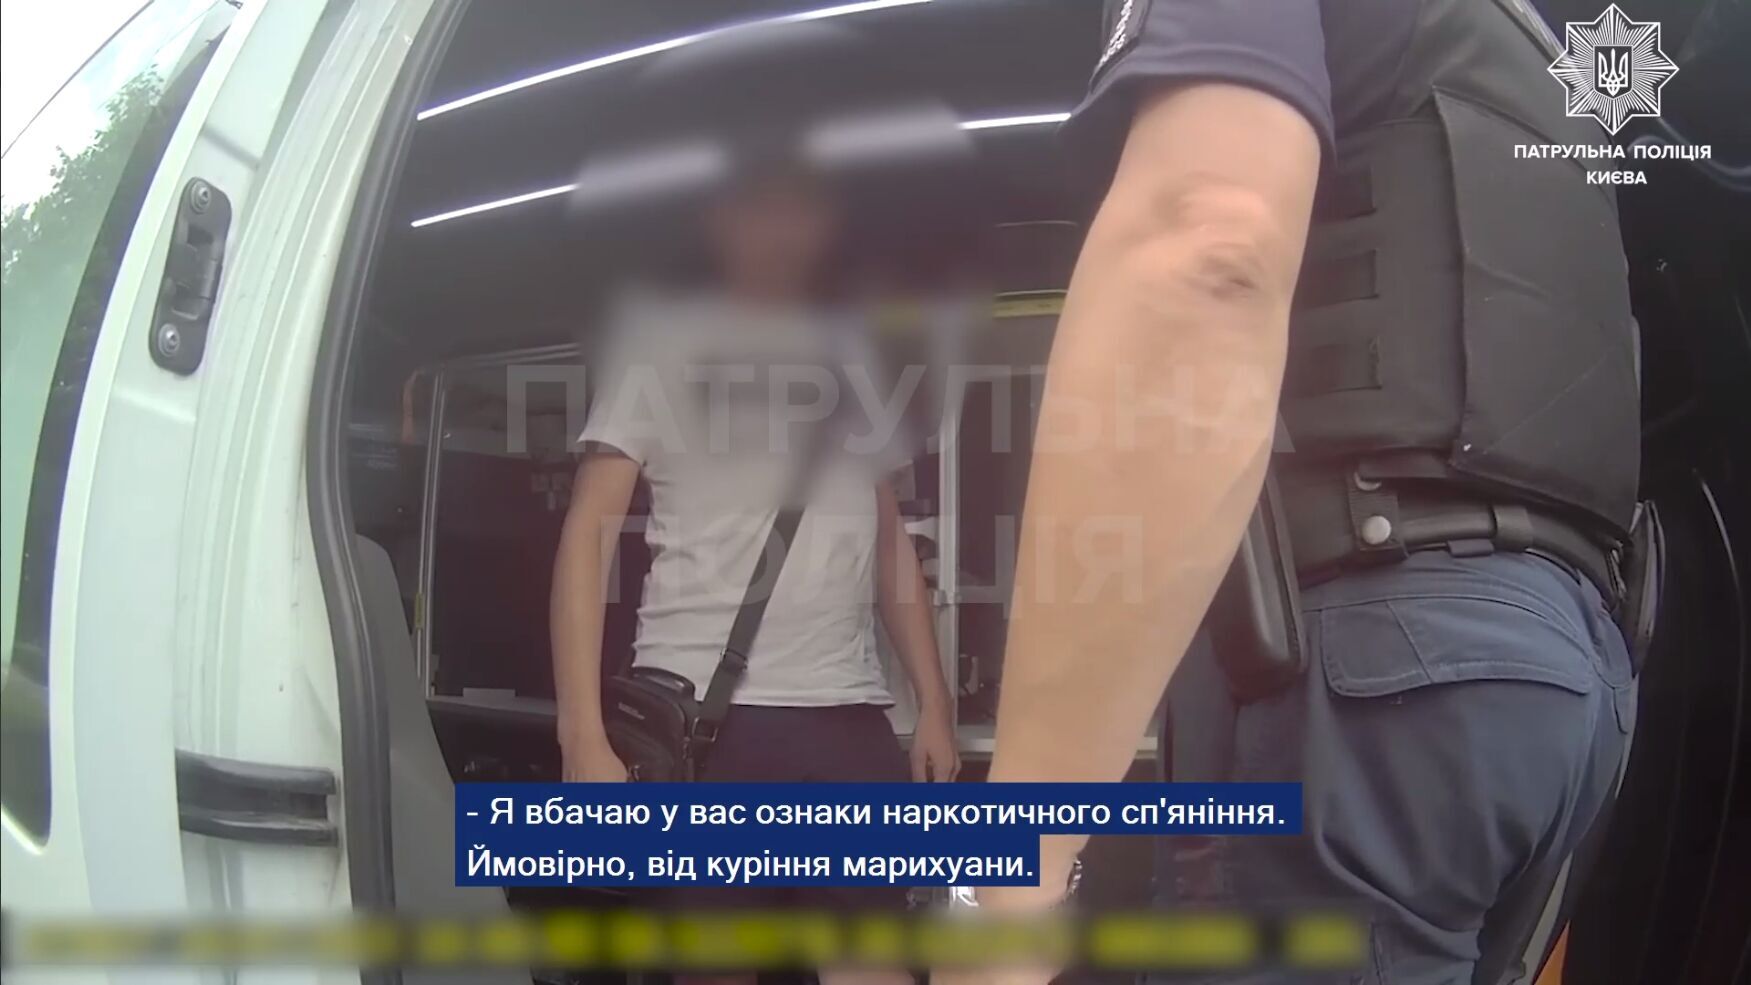 У Києві виявили водія тролейбуса, який під наркотиками перевозив пасажирів. Відео